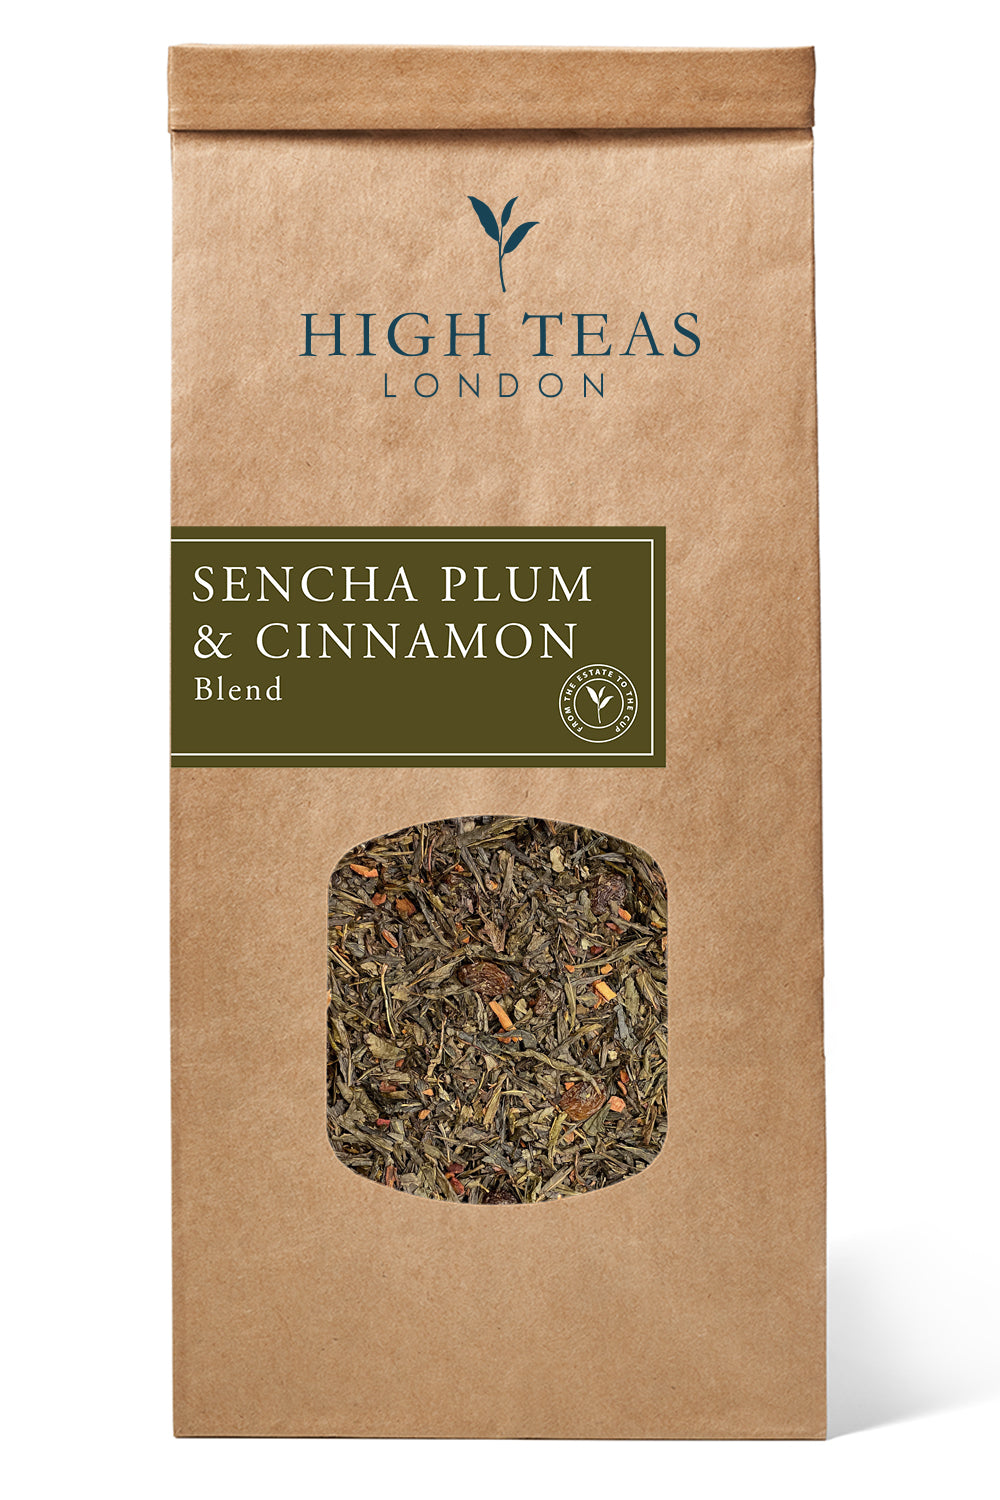 Sencha Plum and Cinnamon-250g-Loose Leaf Tea-High Teas